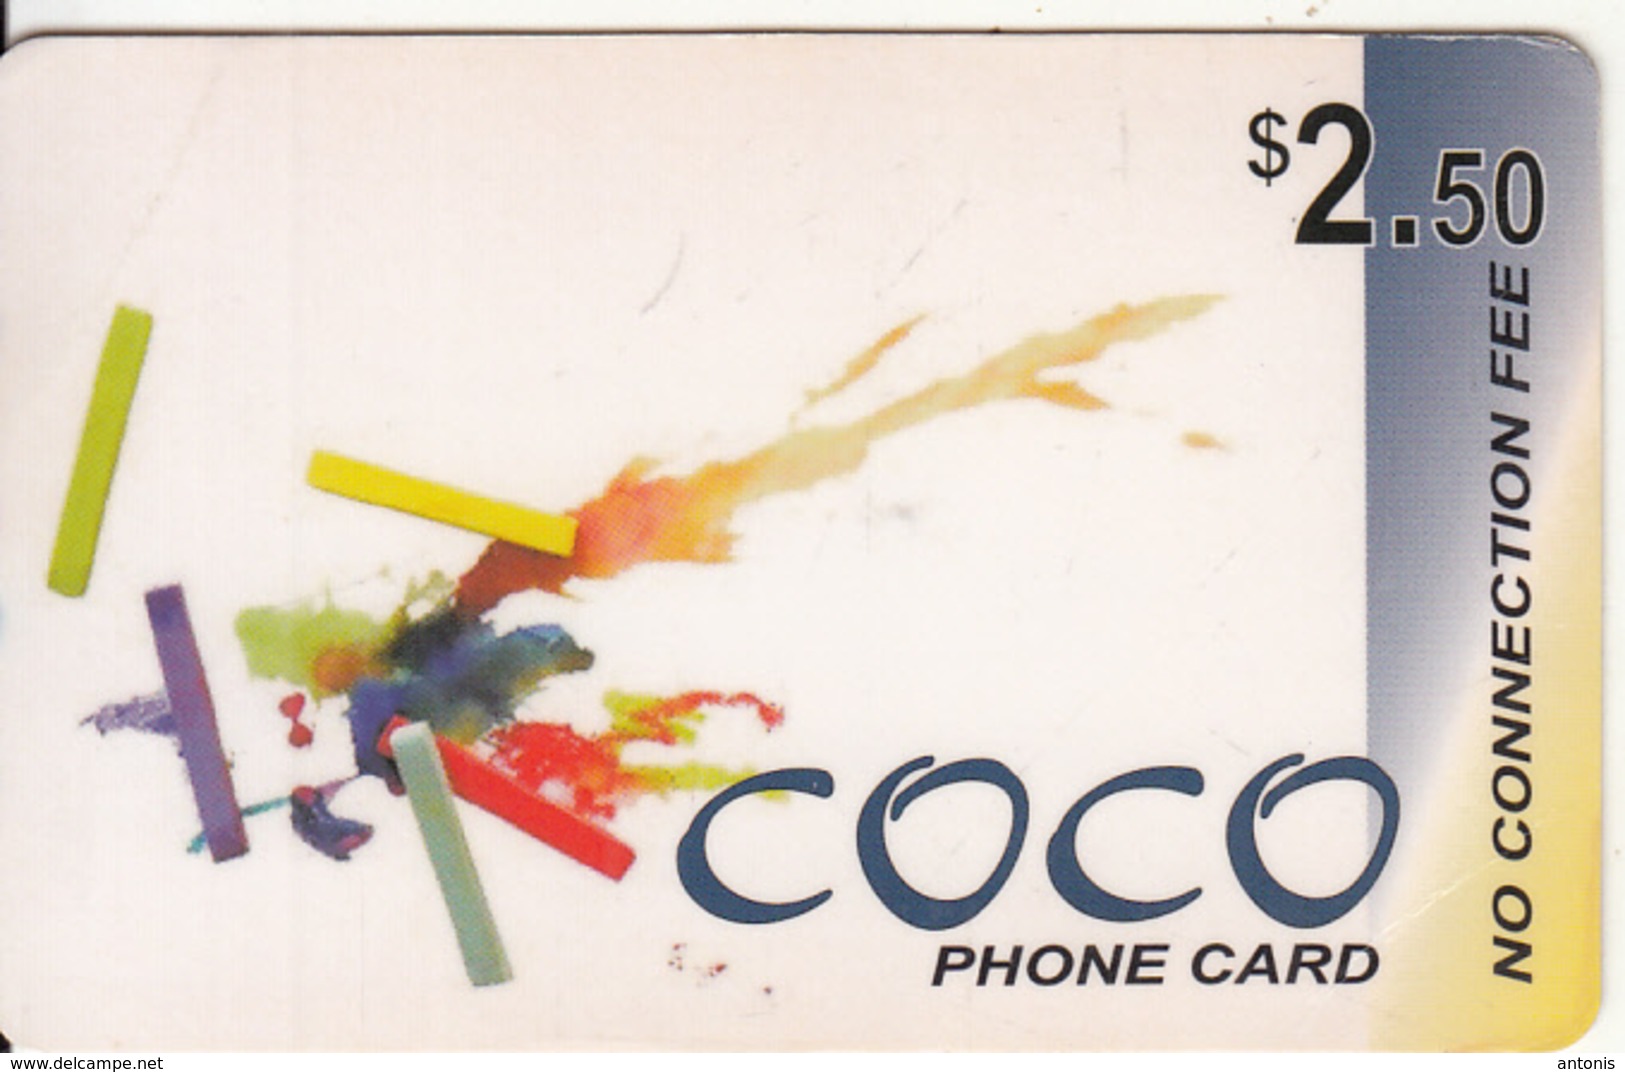 CANADA - Coco, MCI Prepaid Card $2.50(416-848-6996, Yellow Reverse), Used - Canada